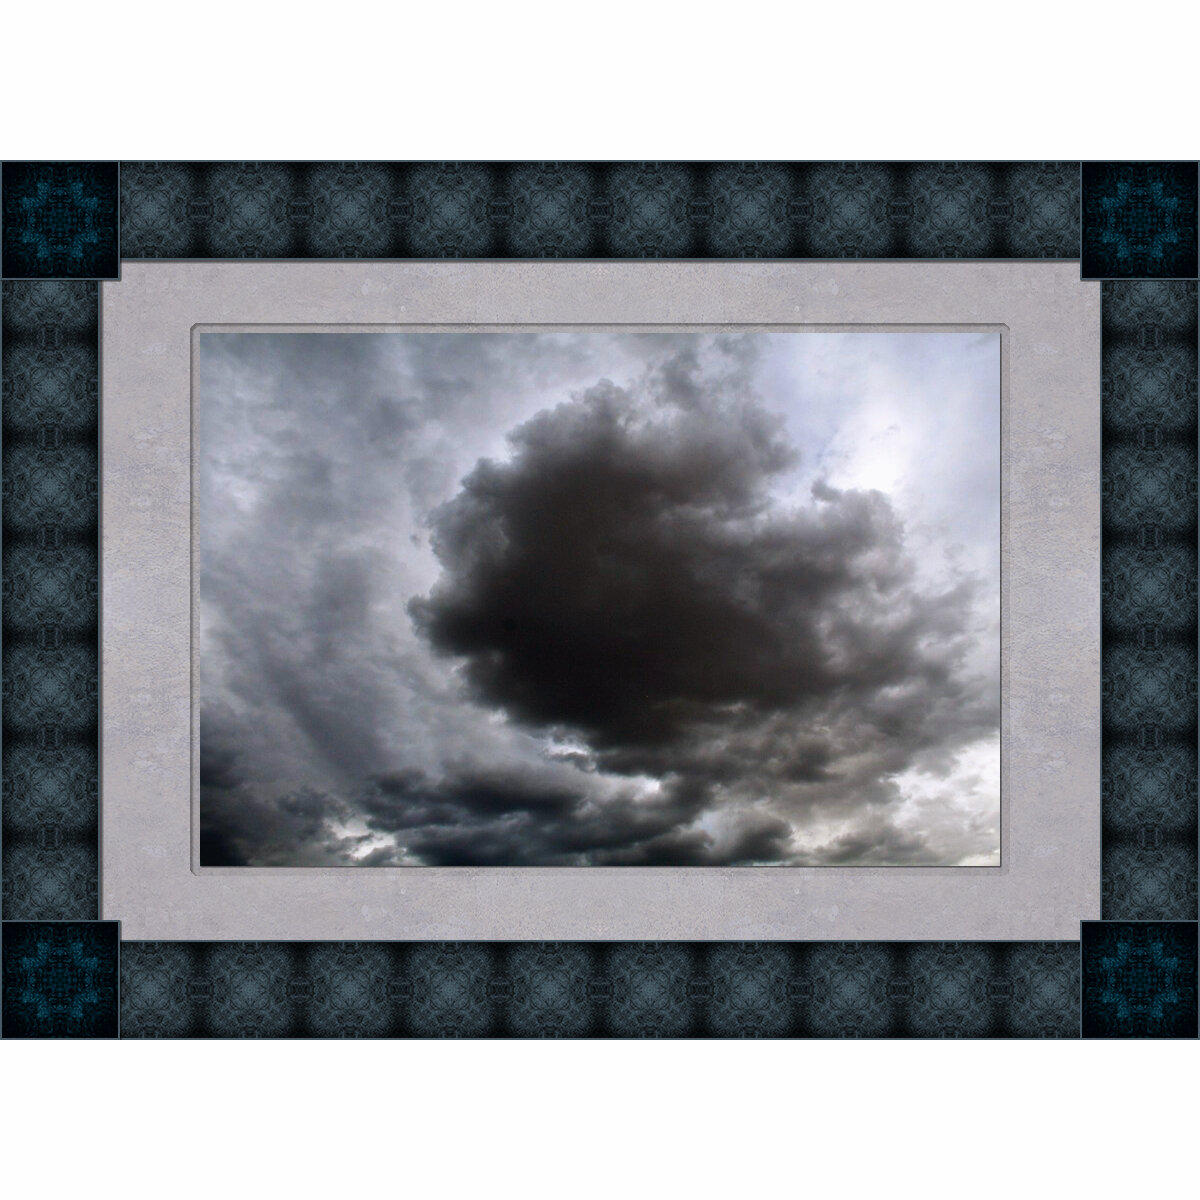 clouds-framed-ig.jpg